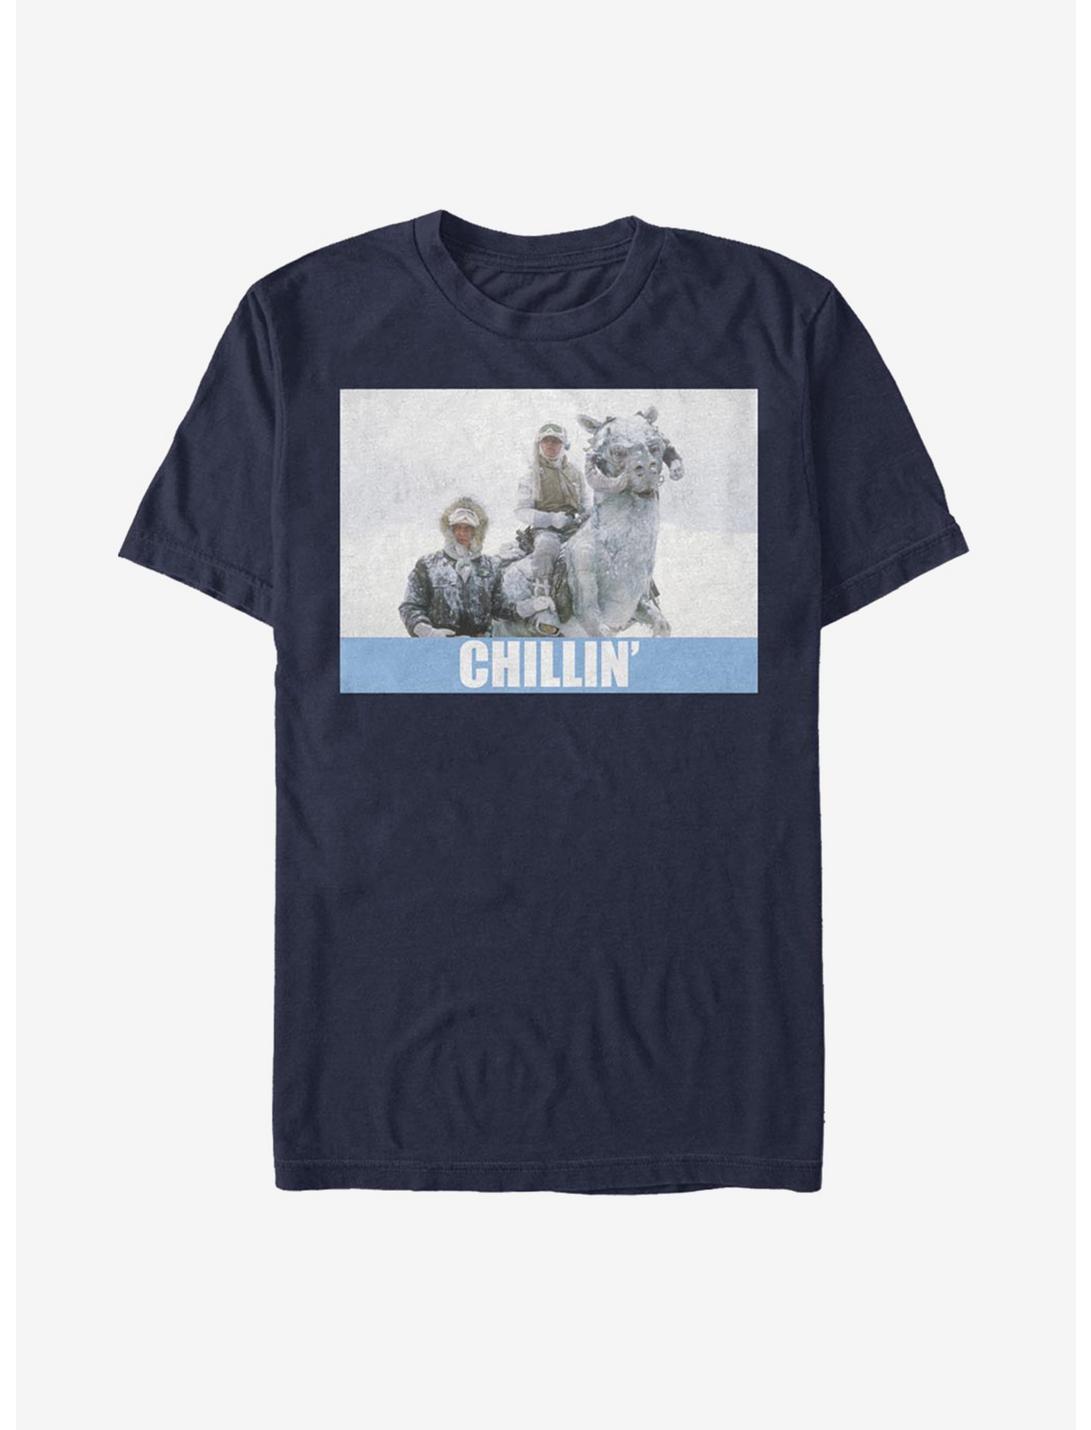 Star Wars Chillin' T-Shirt, NAVY, hi-res